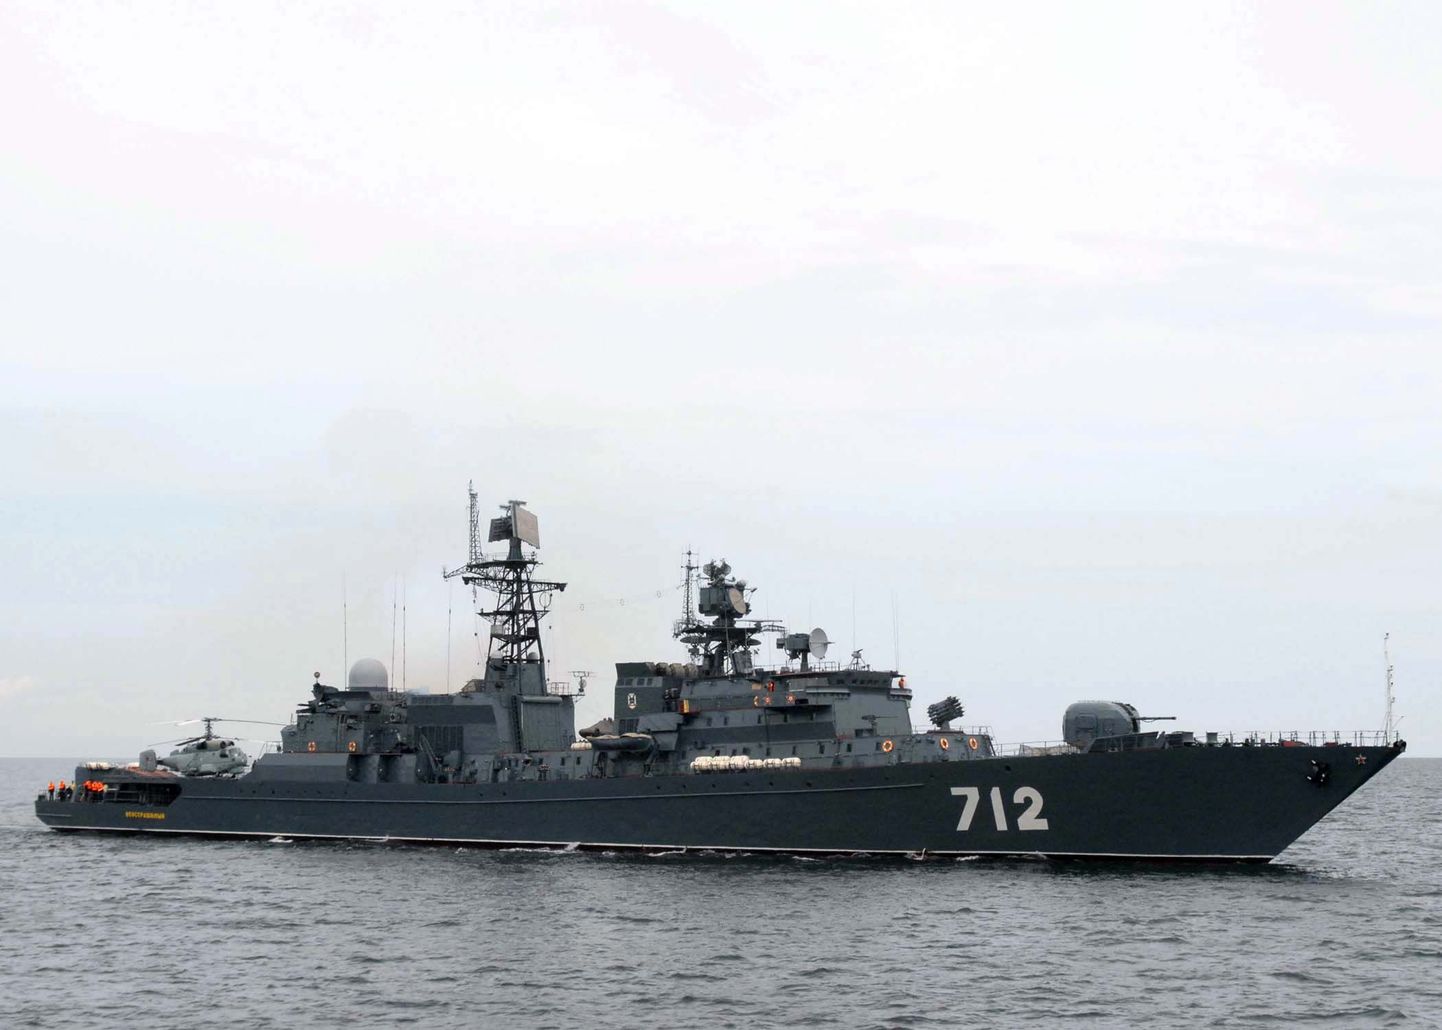 Vene sõjalaevastiku moodsaim suur fregatt Neustrašimõi (Kartmatu).